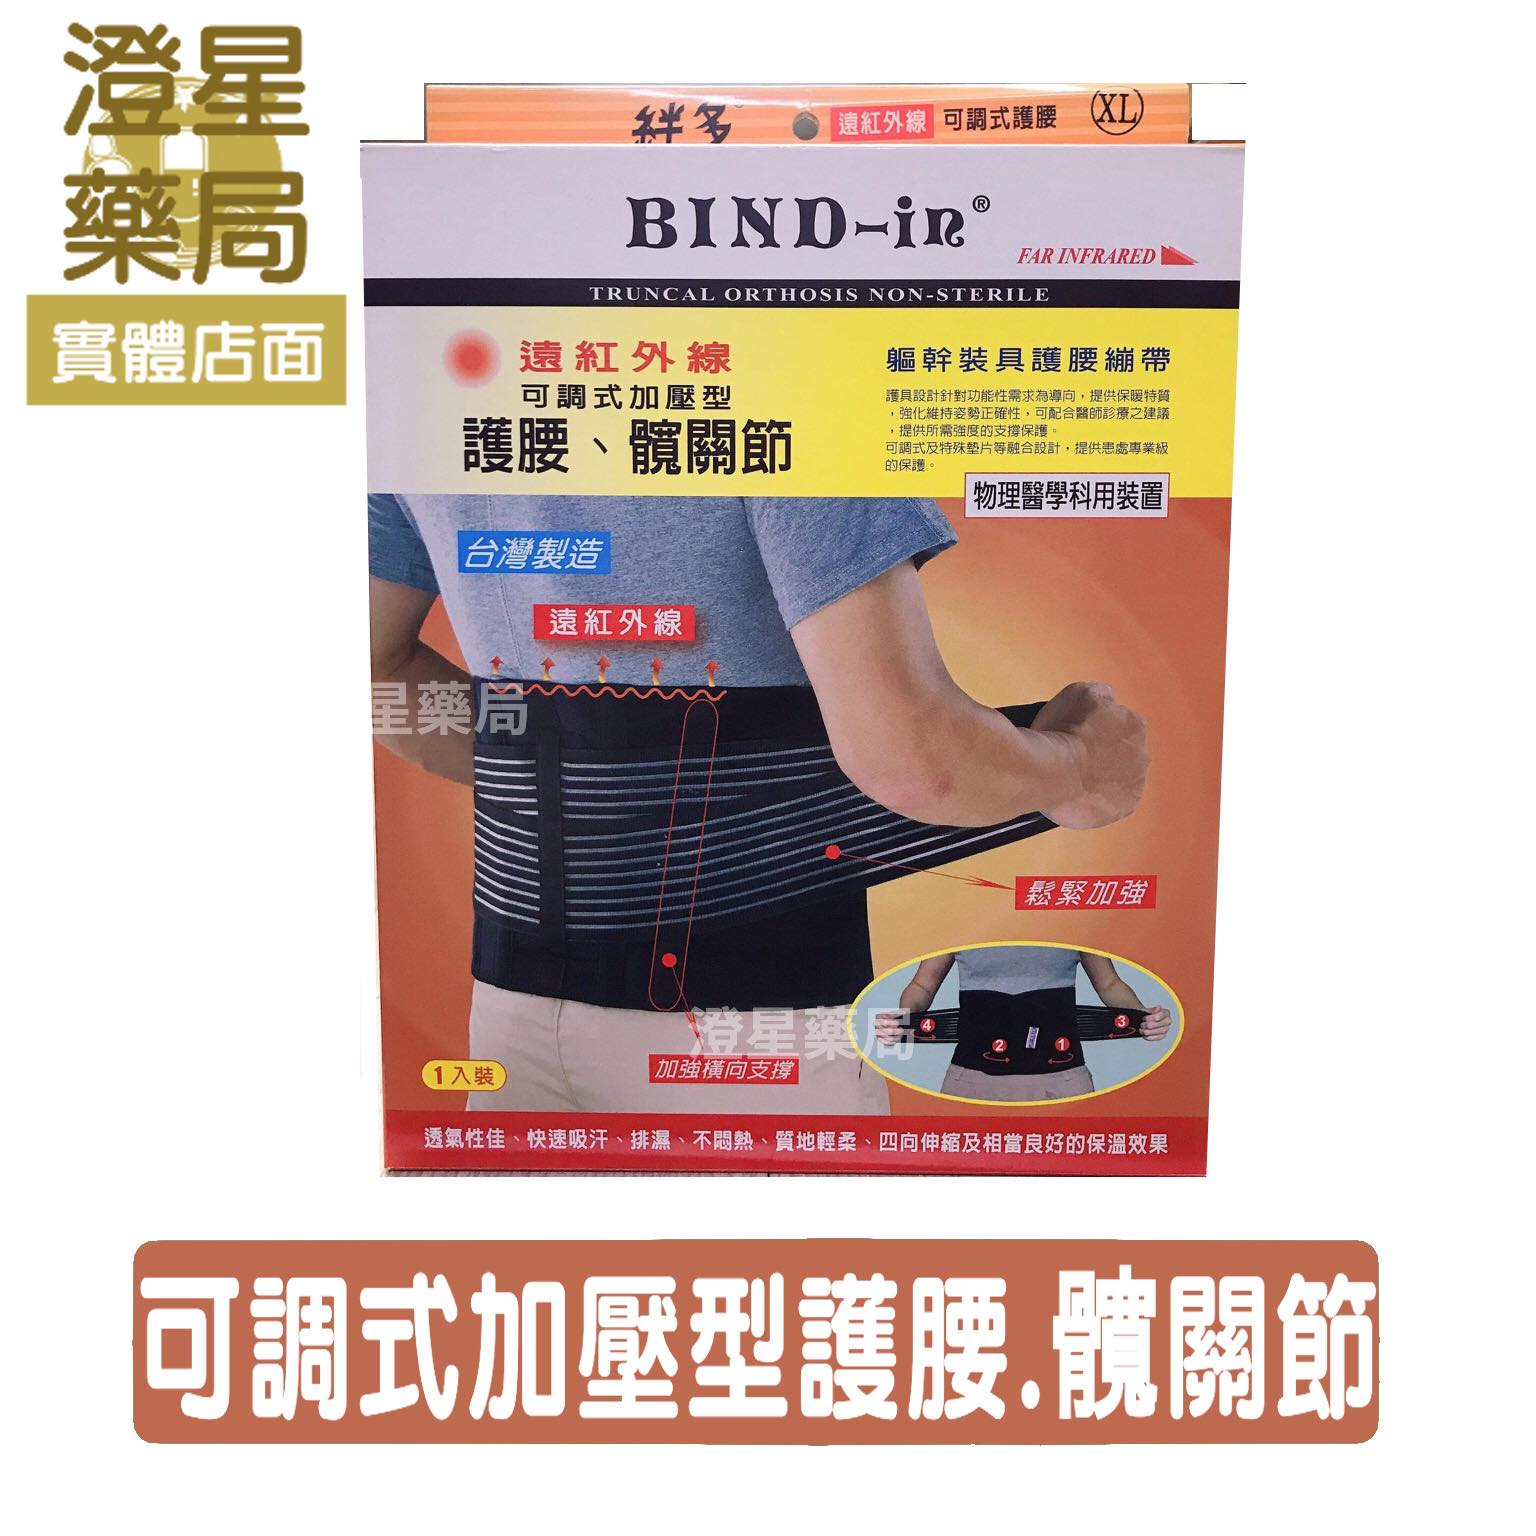 【免運】 Bind-In《 護腰 》絆多 遠紅外線可調式護腰 / 護具 / bind in